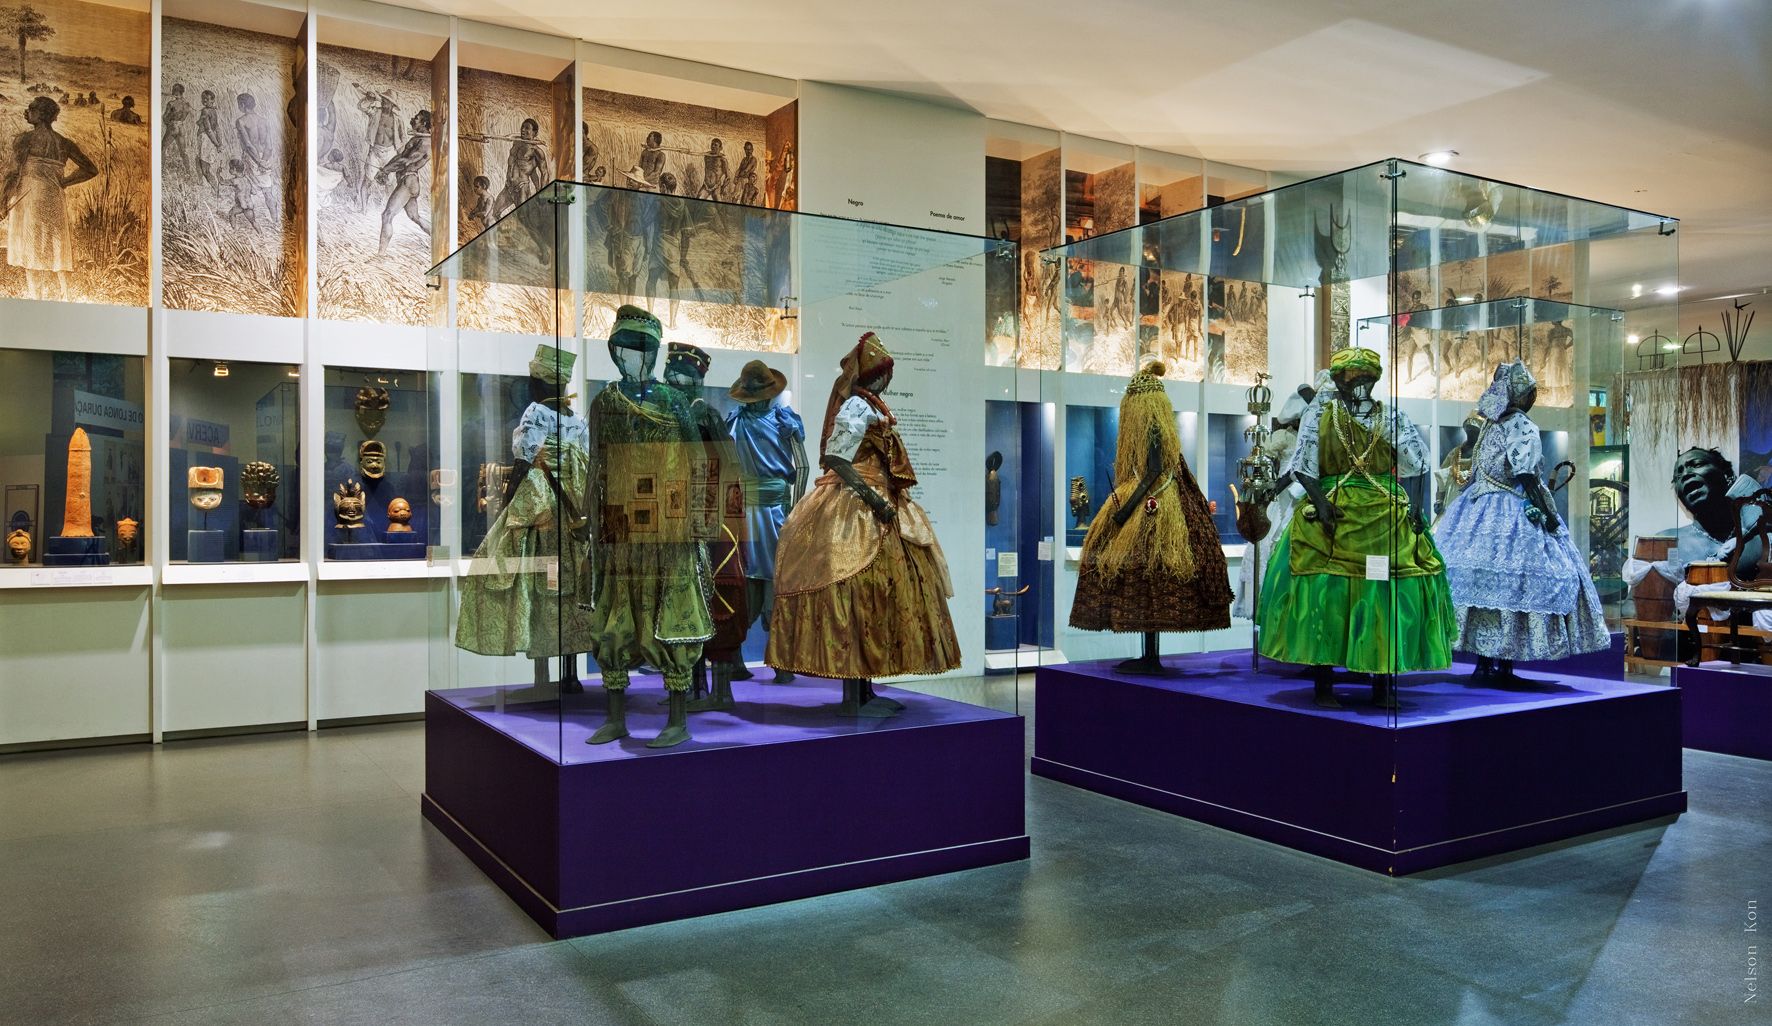 Museu Afro-Brasileiro